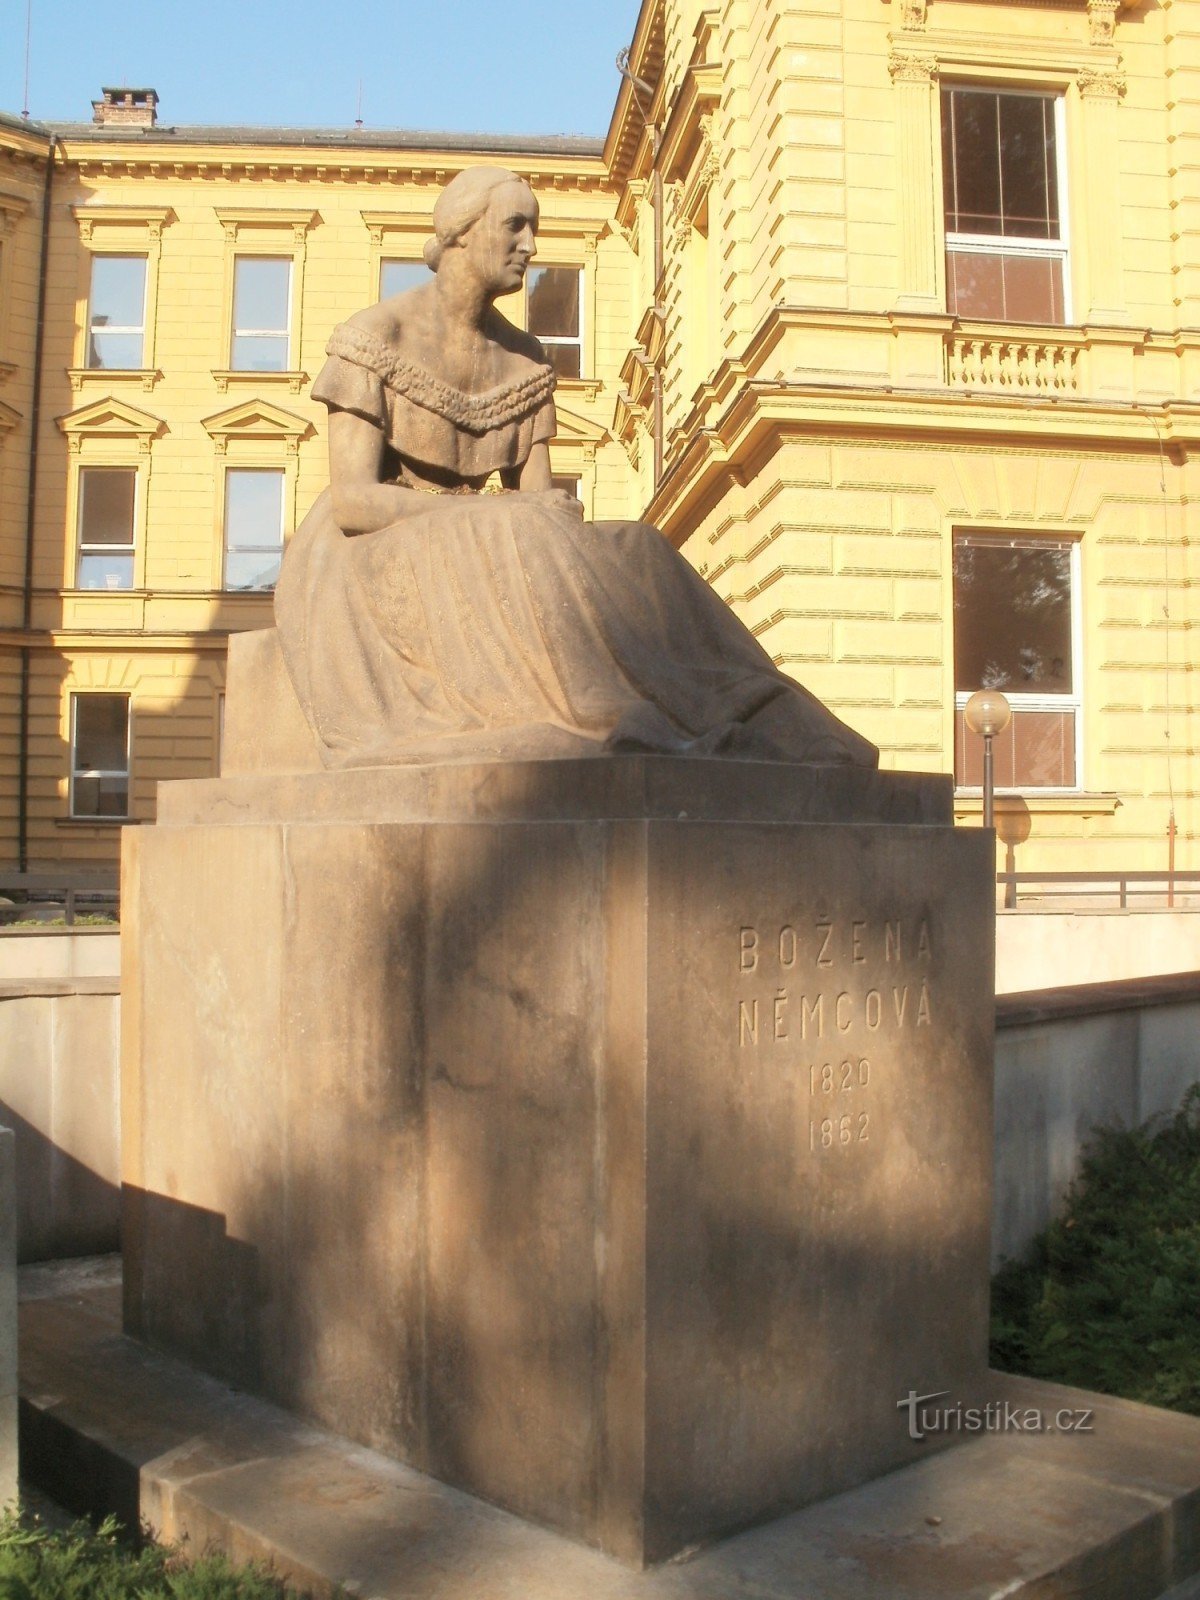 Hradec Králové - statue of Božena Němcová